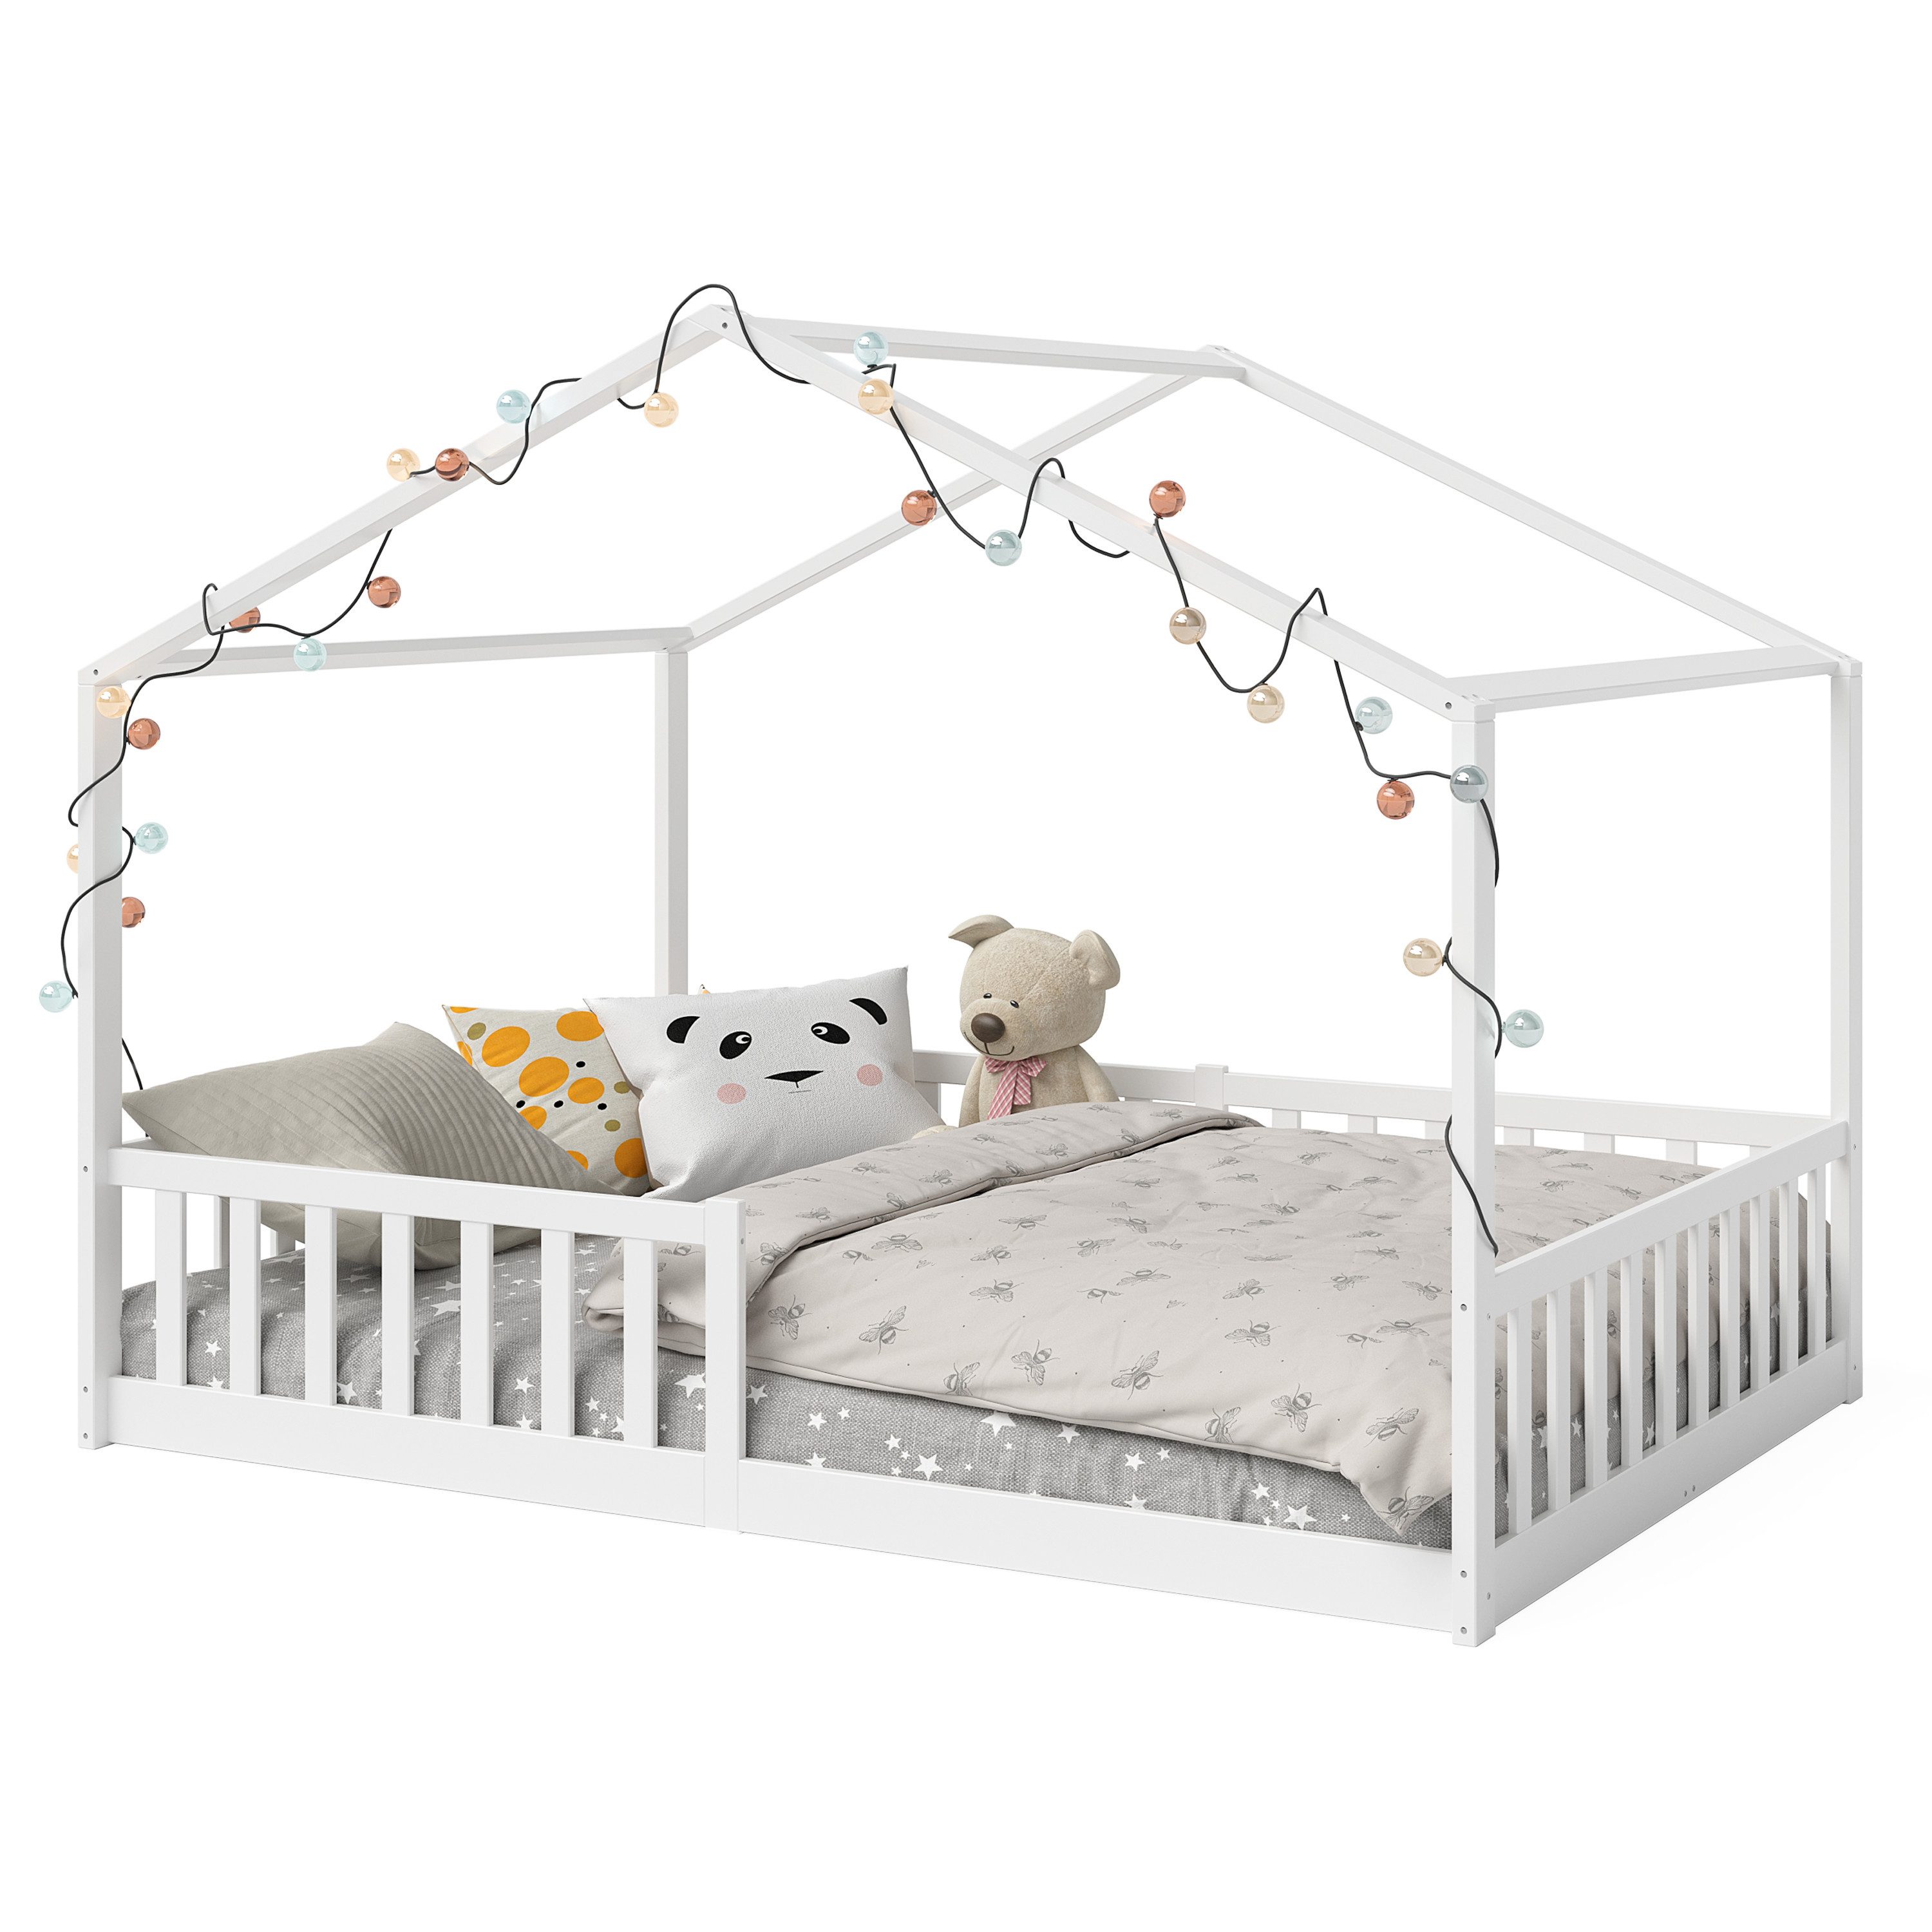 Bellabino Hausbett Bia (weiß, 140x200 cm, Bodenbett mit Rolllattenrost und Rausfallschutz), bodentiefes Kinderbett in verschiedenen Ausführungen